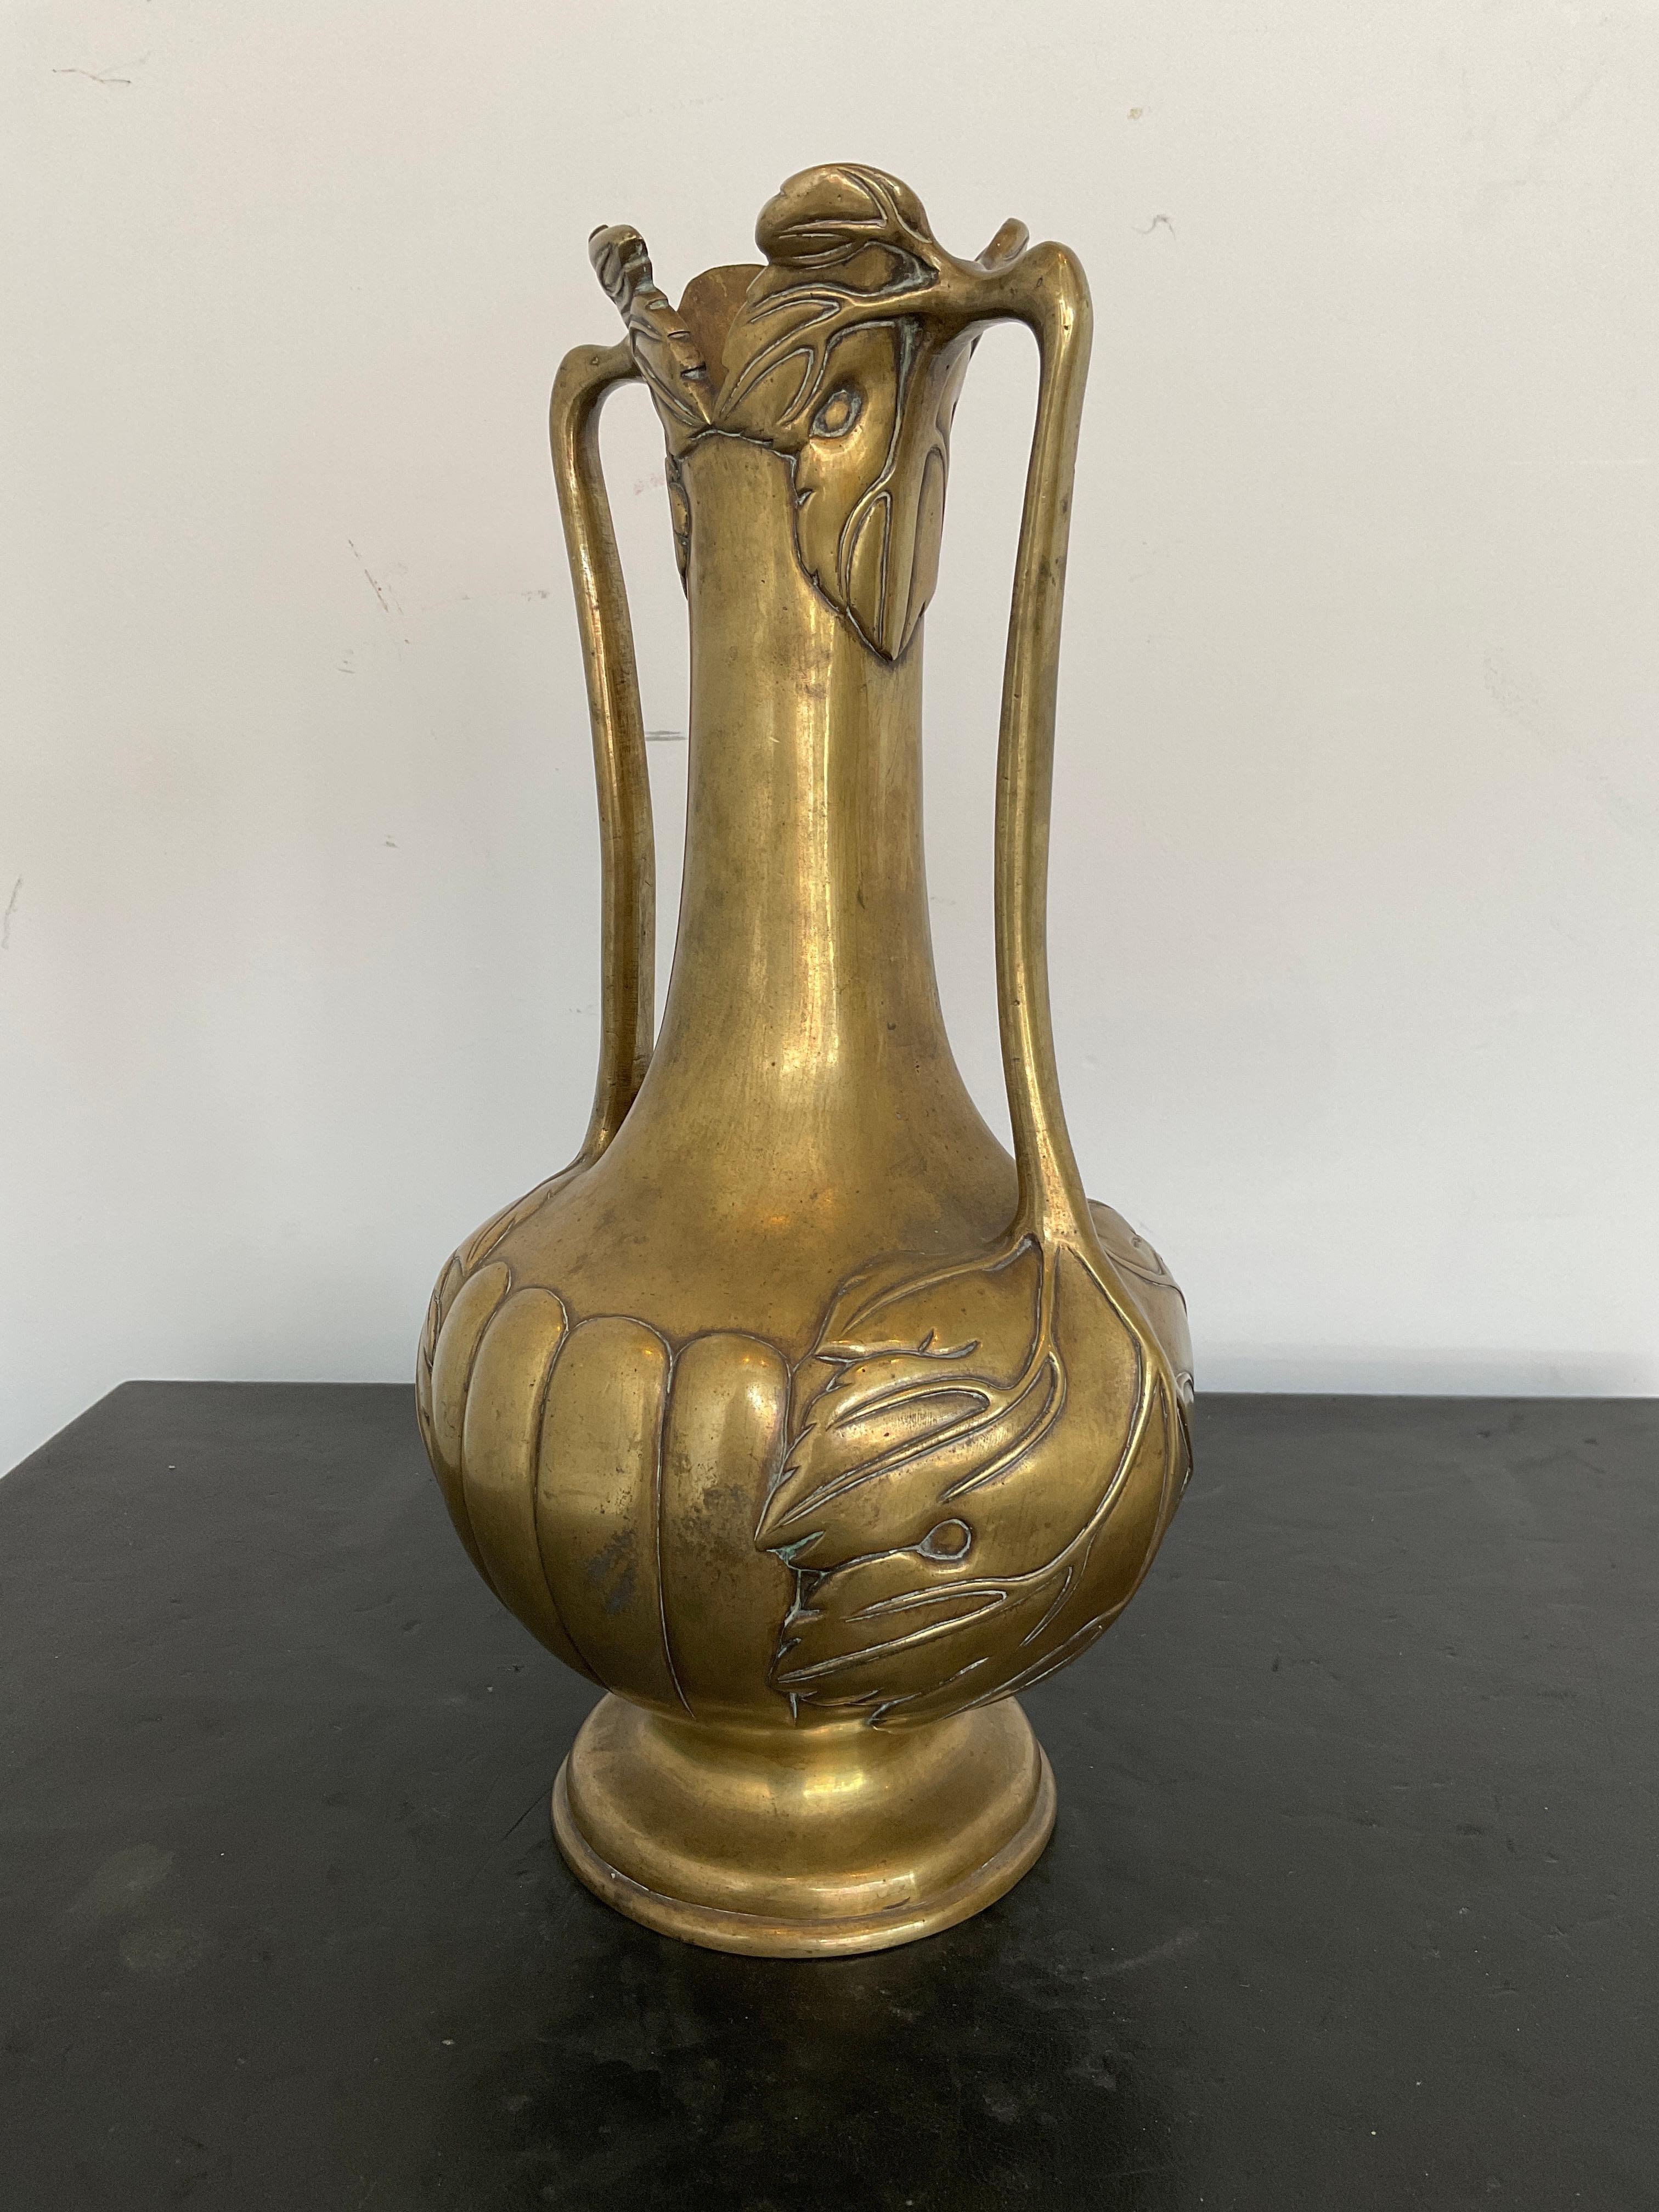 Heavy bronzr art nouveau vase with leaf motif handles.